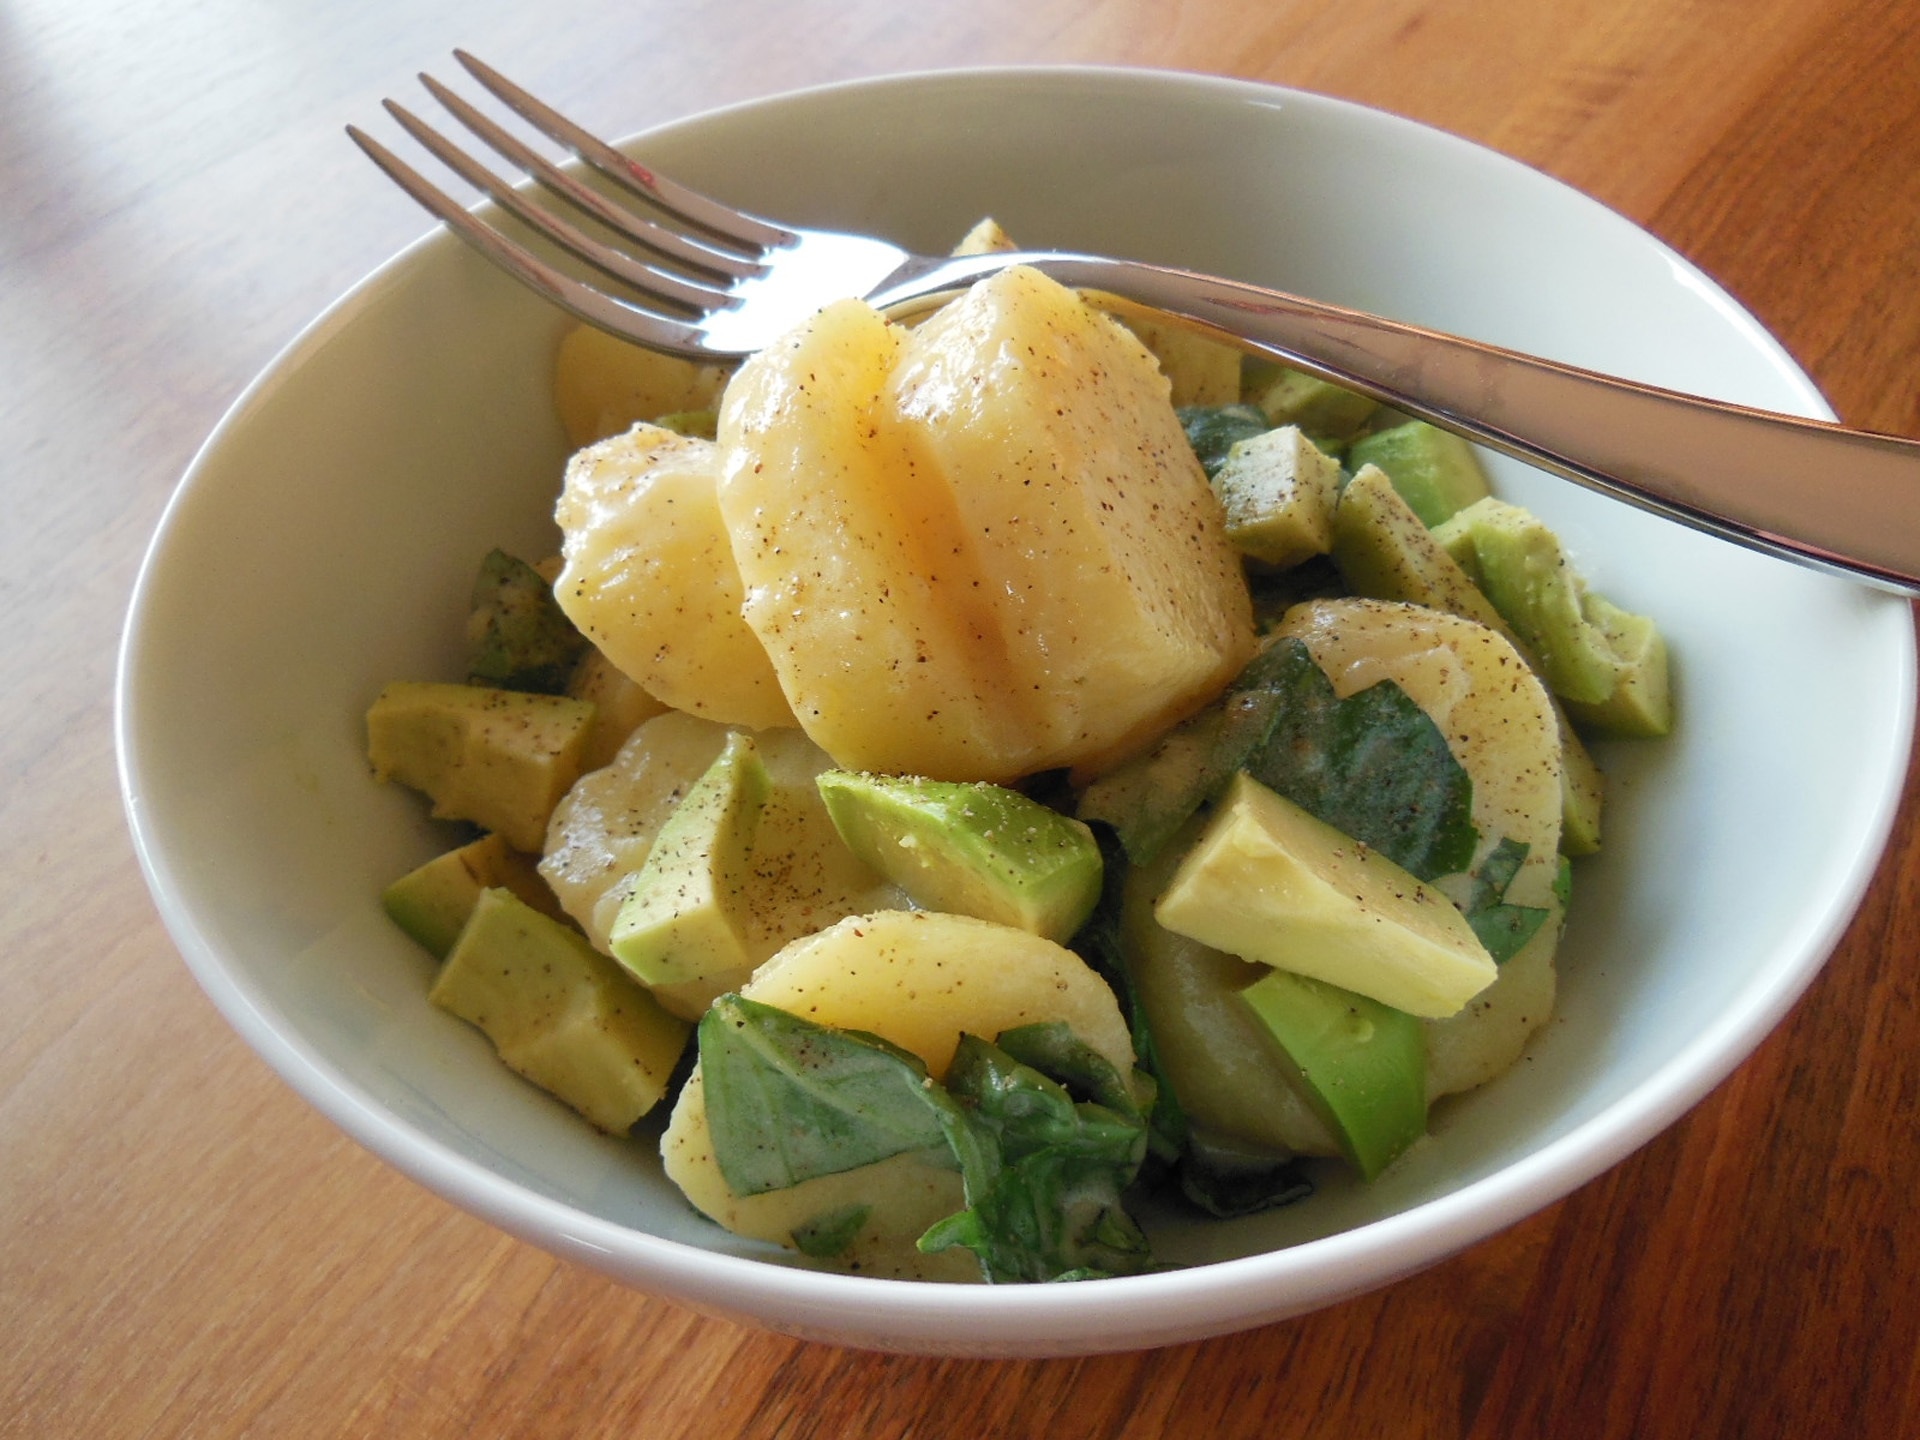 potato and green vegetable salad